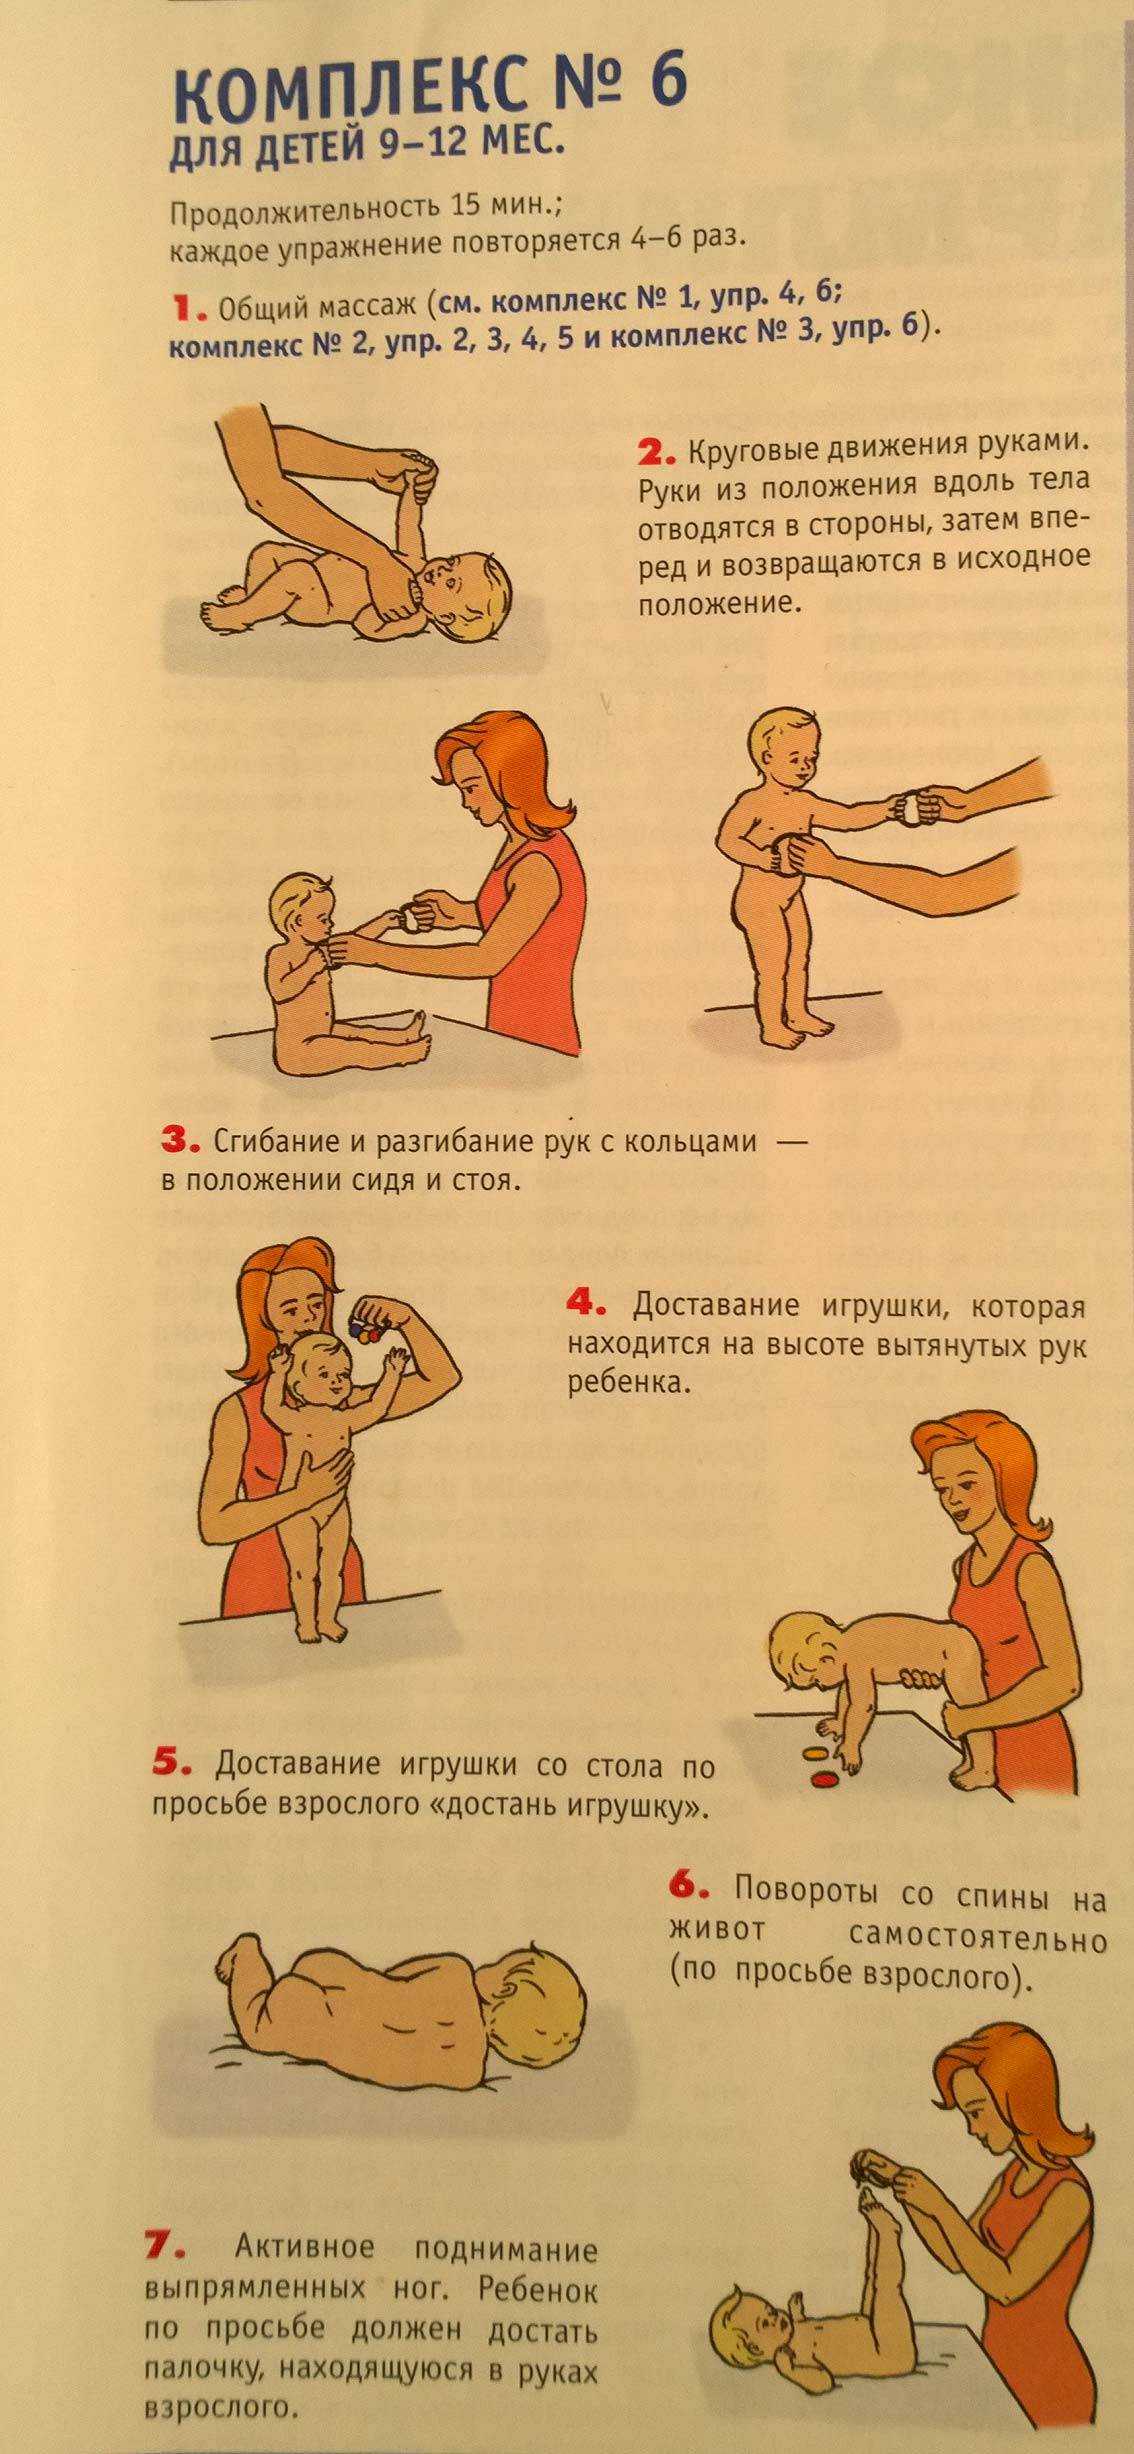 Массаж в 6 месяцев. Гимнастика для укрепления мышц спины для грудничка 9 месяцев. ЛФК для 9 месячного ребенка. Массаж и гимнастика детей от 6 до 9 месяцев. Массаж для 6 месячного ребенка для укрепления мышц спины.